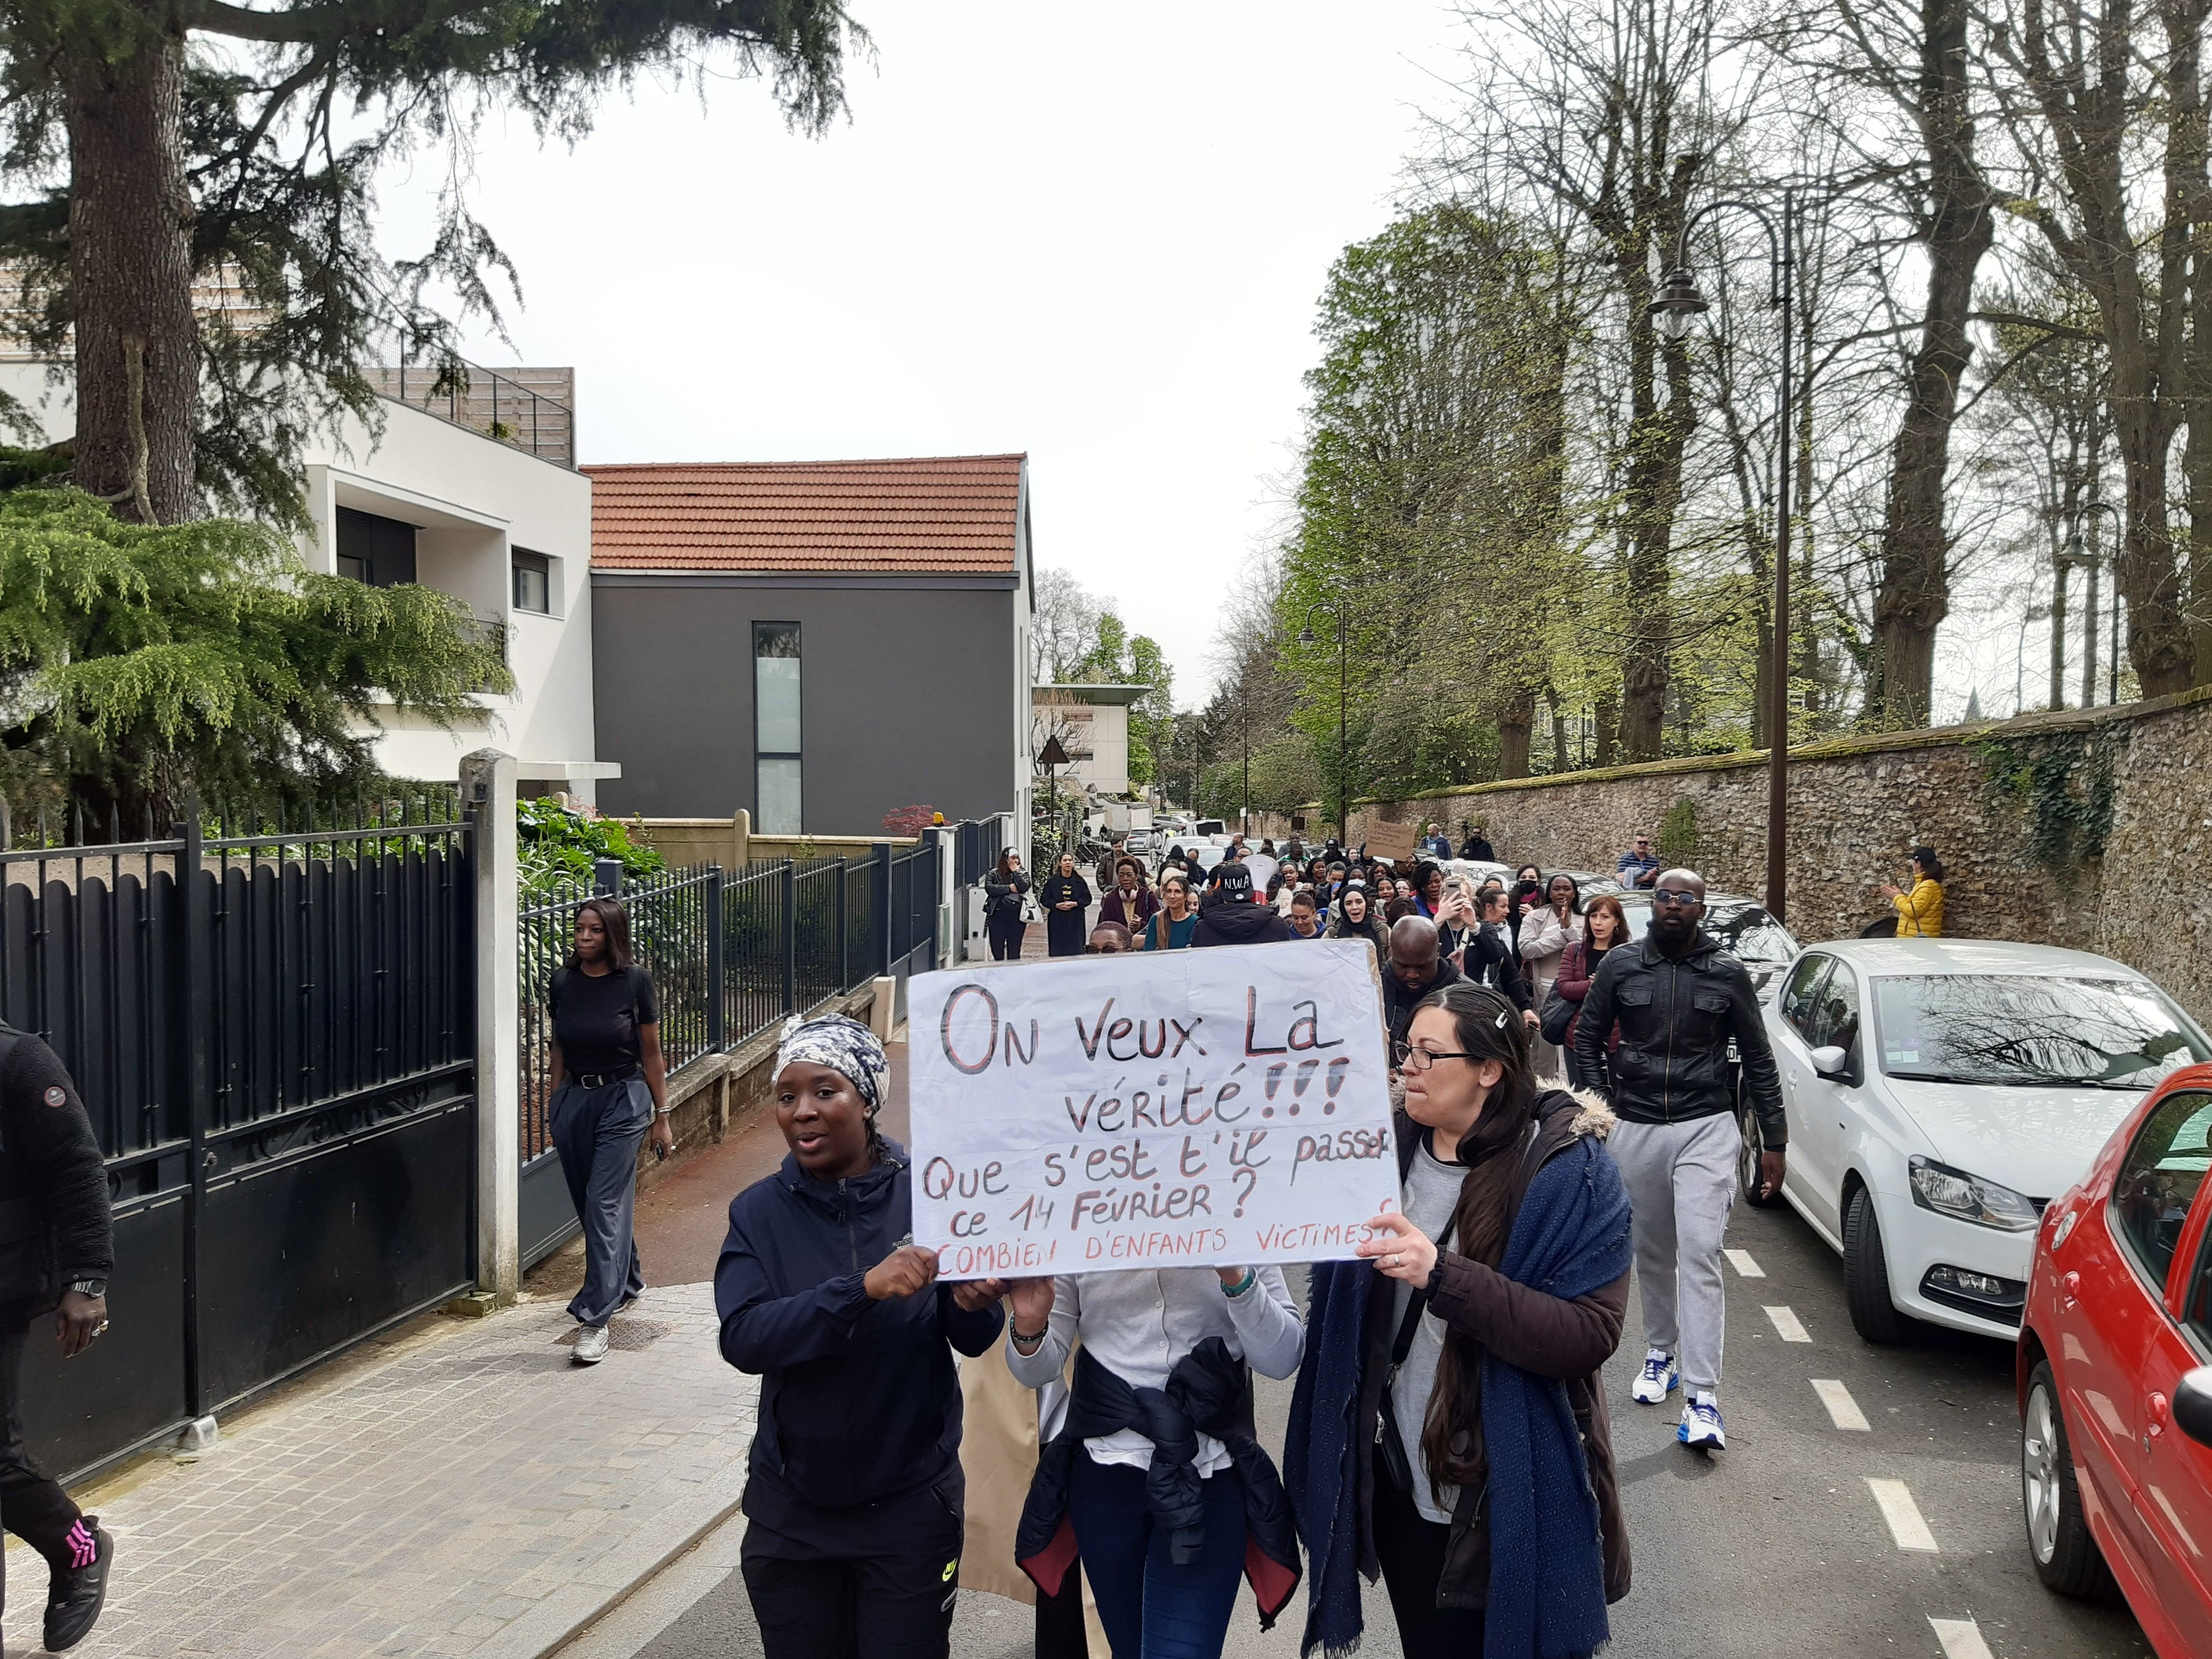 Châtenay-Malabry, ce samedi 6 avril. Les manifestants s’en prennent directement à la municipalité, alors que l'information de ces possibles agressions sexuelles ne leur est parvenue que tardivement. LP/Marjorie Lenhardt